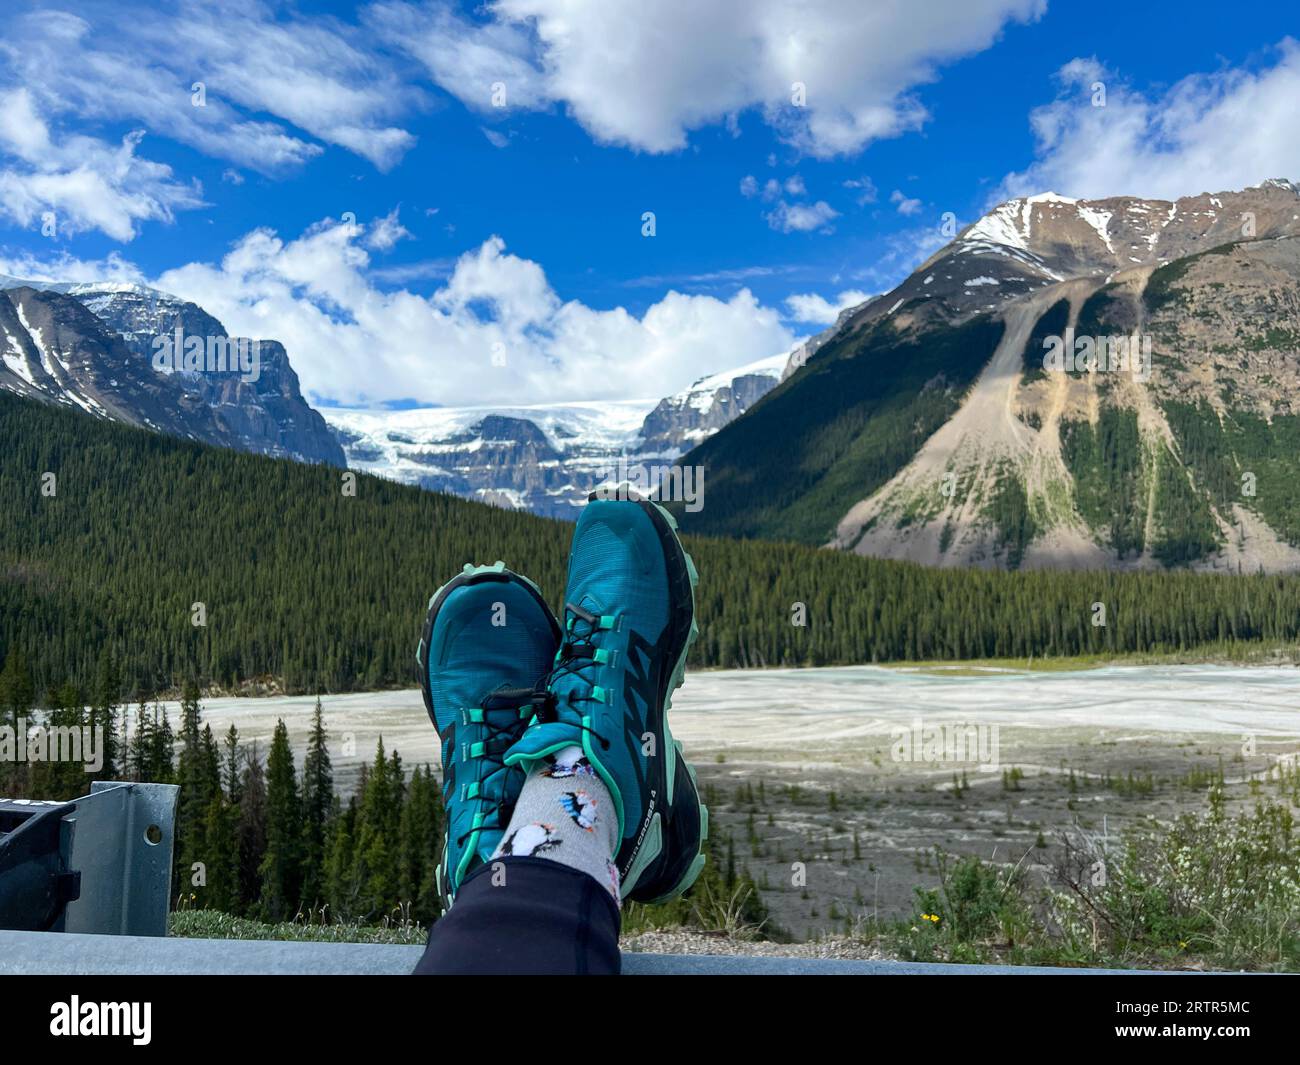 Le persone con i piedi in alto ammirano la vista panoramica del fiume Athabasca e delle montagne circostanti nel Jasper National Park, in Canada, in una splendida posizione Foto Stock